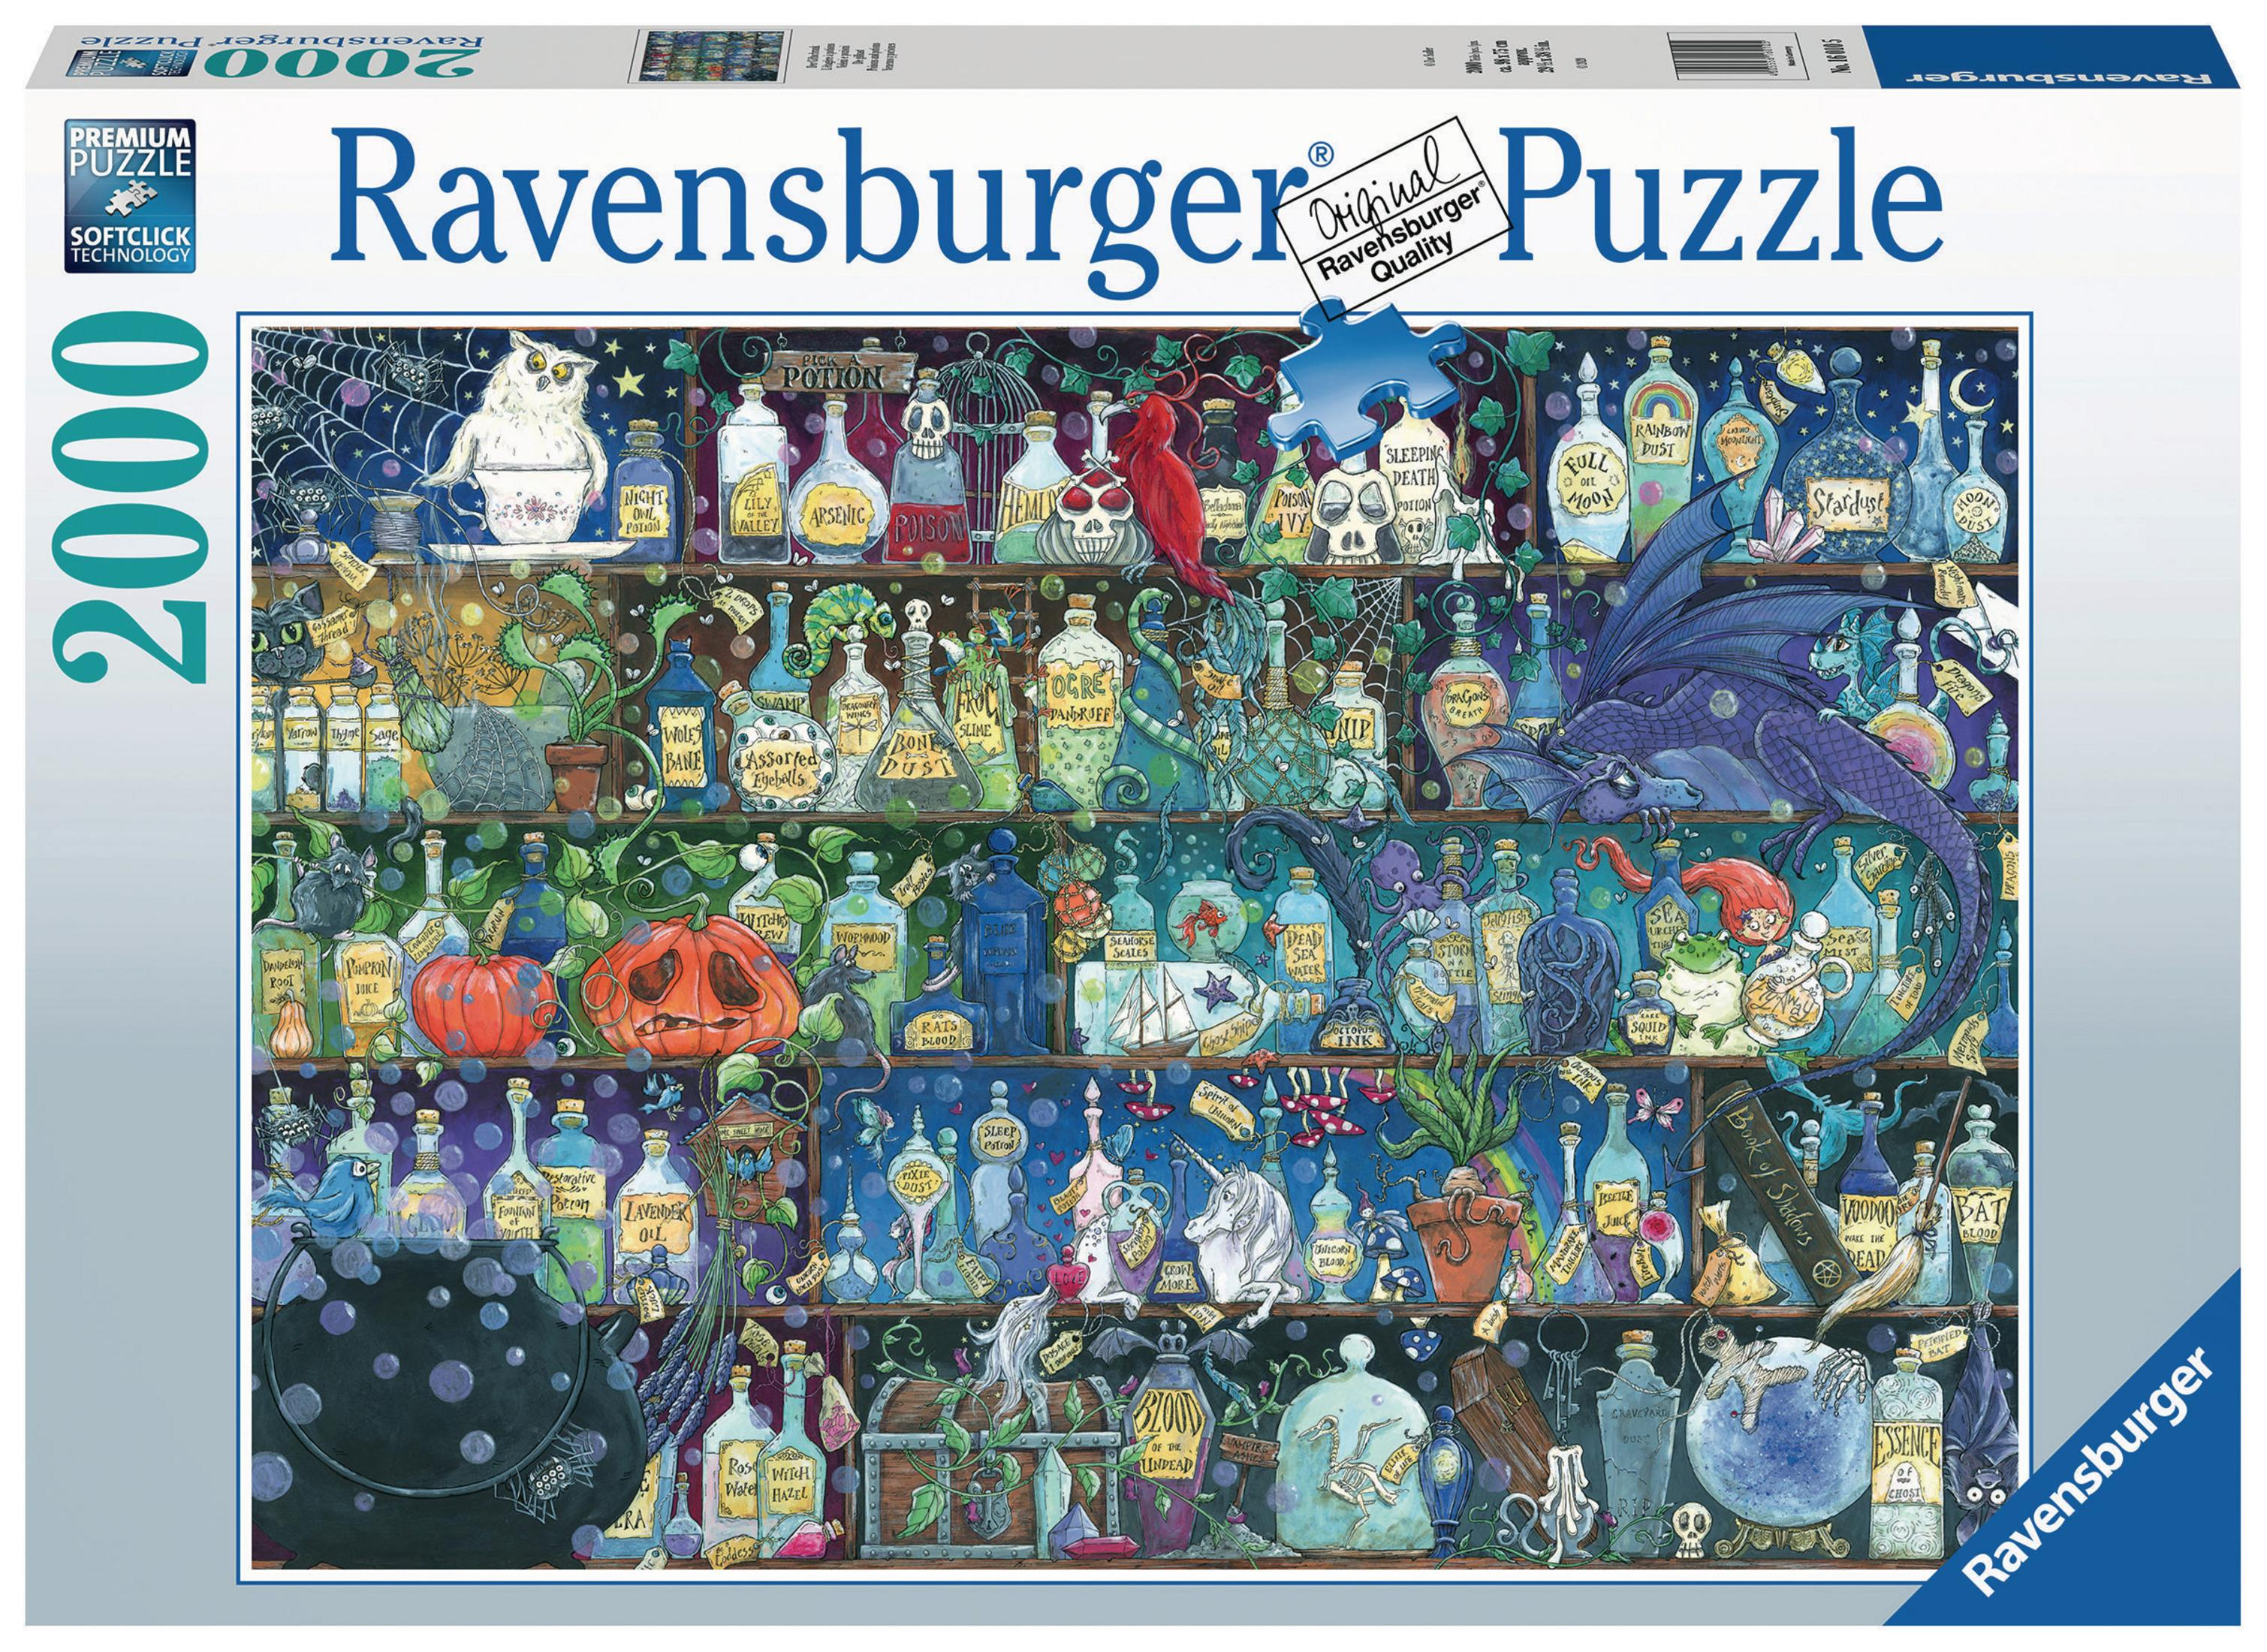 16010 GIFTSCHRANK RAVENSBURGER Puzzle DER